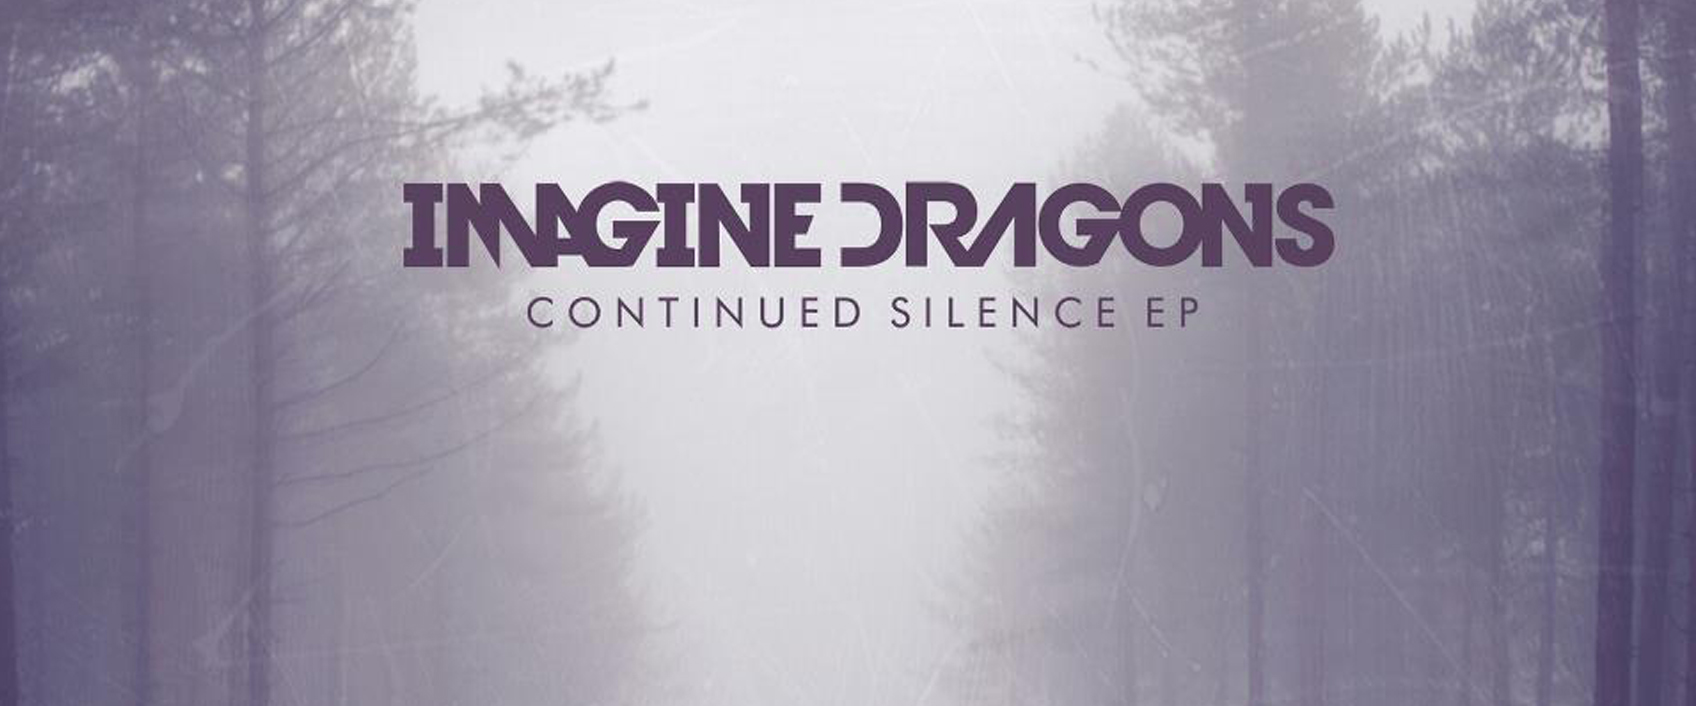 Imagine трек. Imagine Dragons обложки. Обложки музыкальных альбомов imagine Dragons. Imagine Dragons Radioactive обложка. Imagine Dragons логотип.